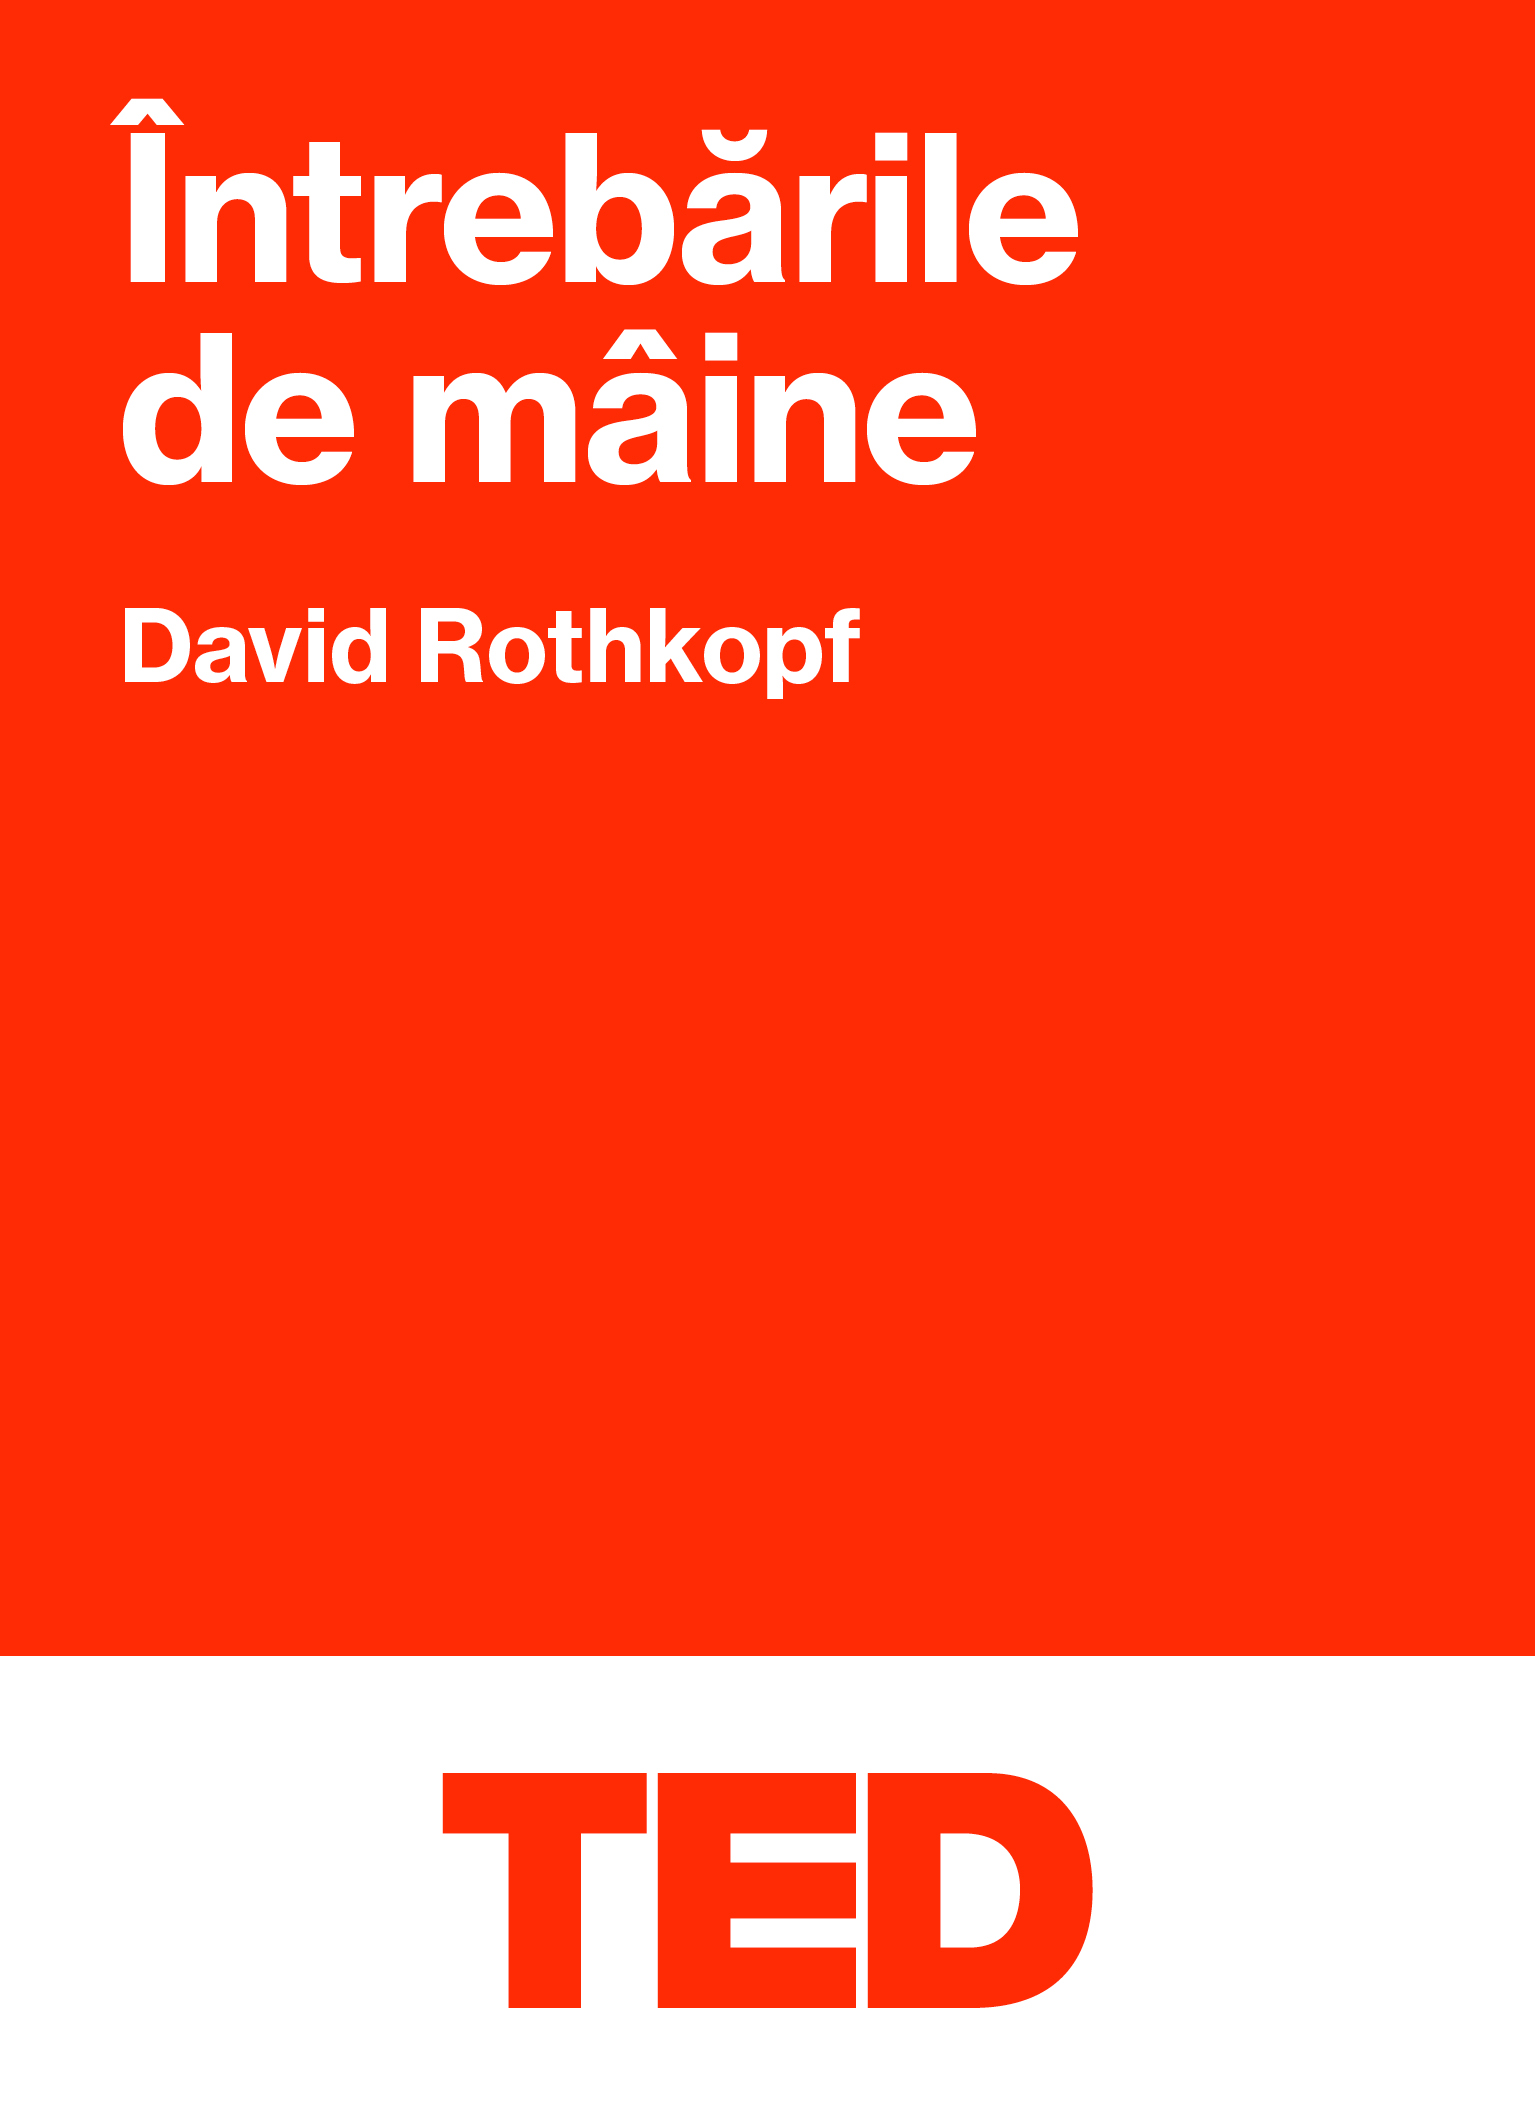 TED – Intrebarile de maine | David Rothkopf Black Button Books Business si economie